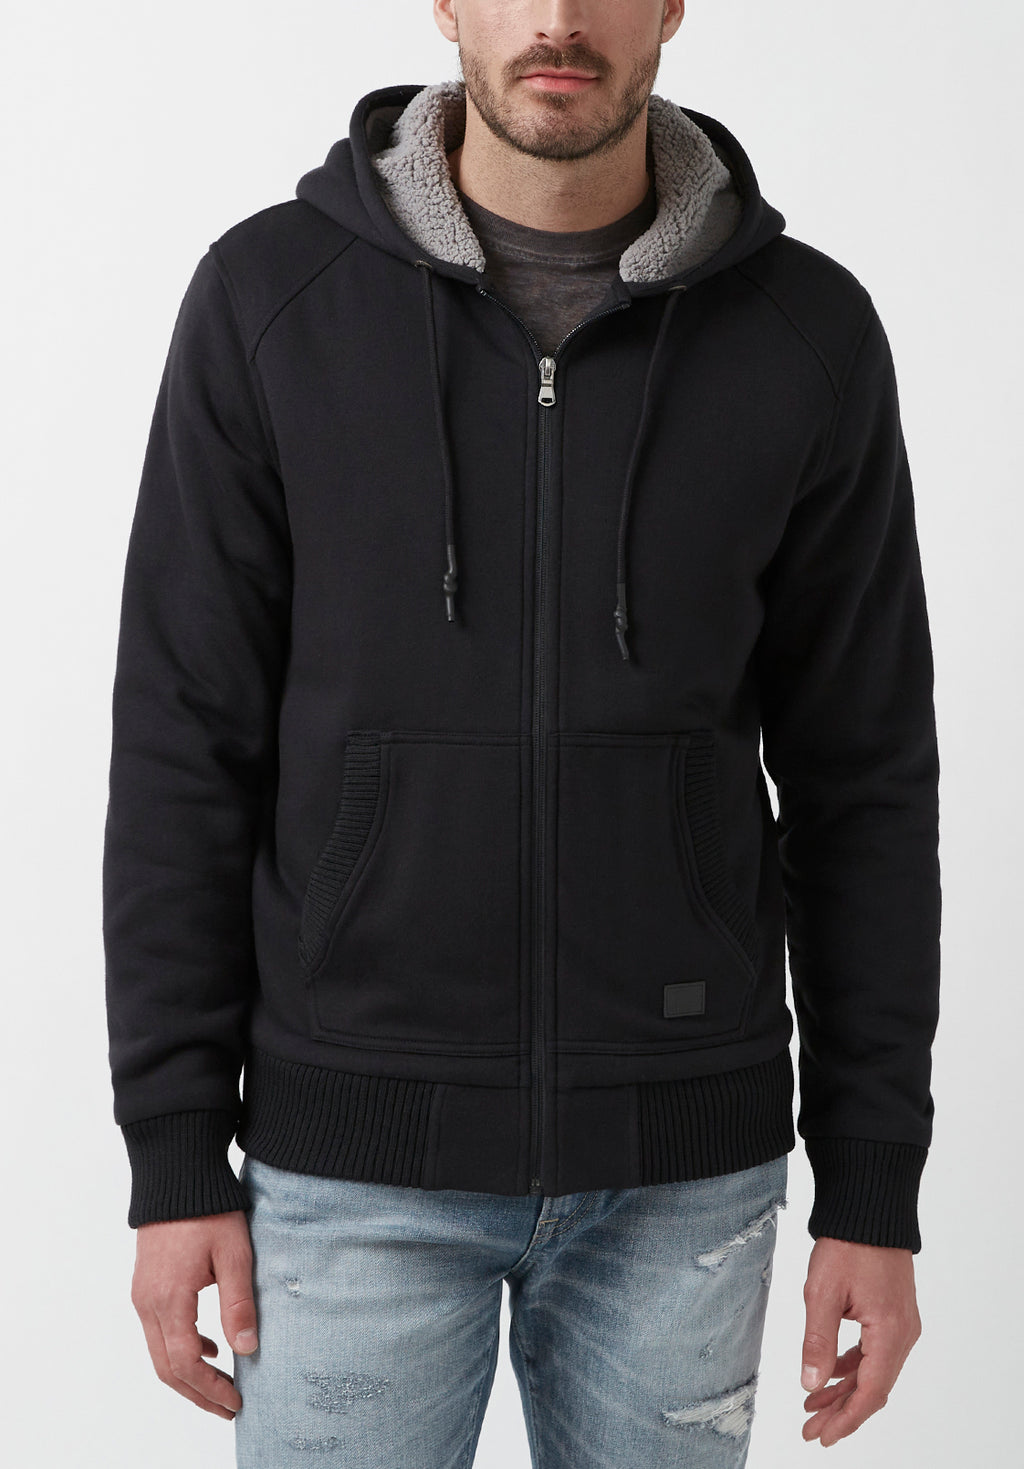 Men's Sweatshirts & Hoodies - Crewneck, Zipper & Fleece